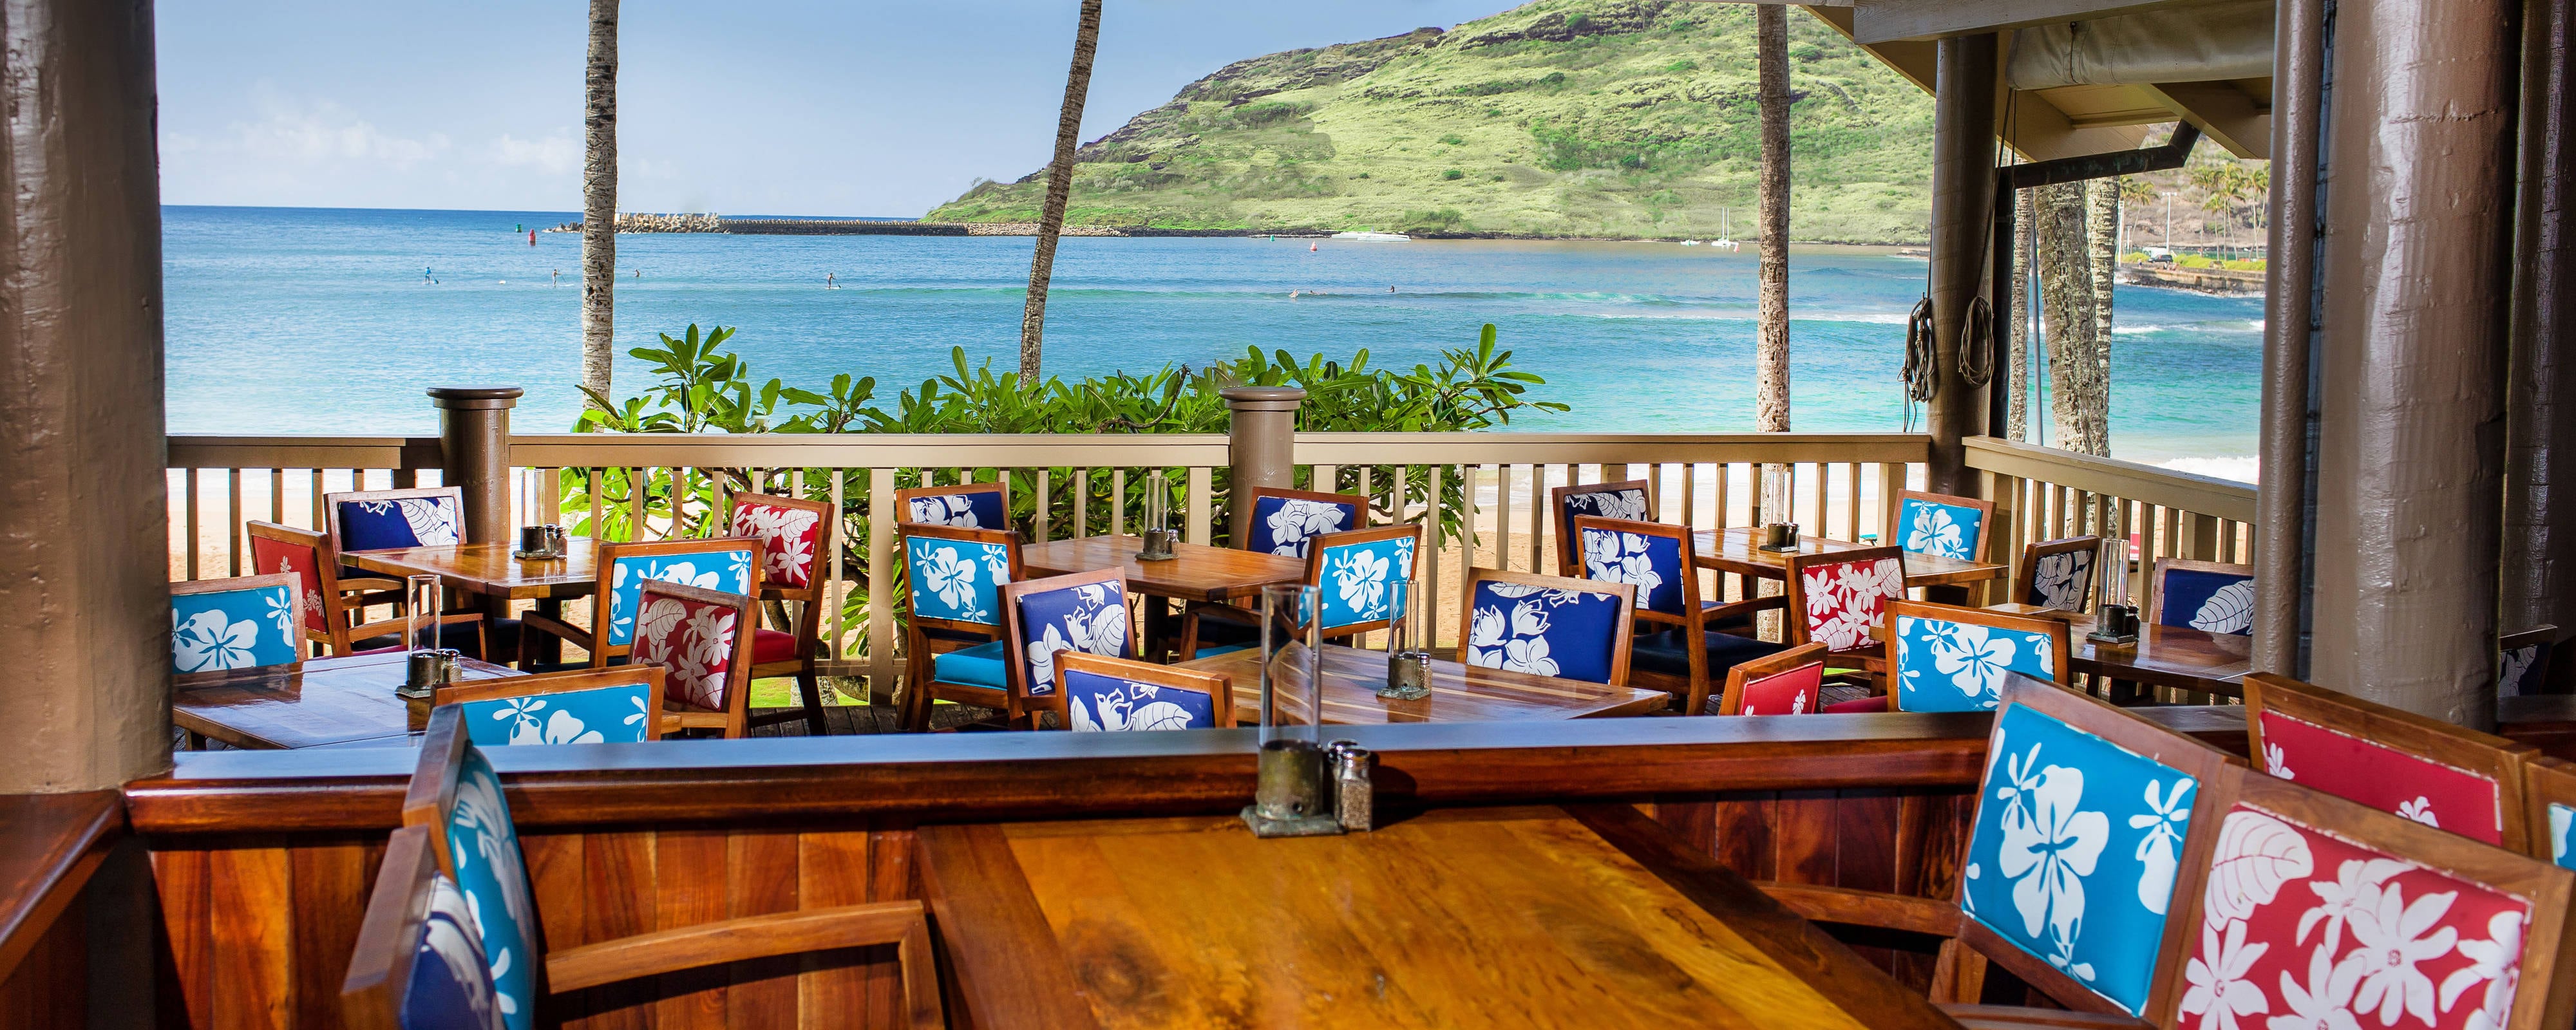 Kalapaki Beach Restaurant | Marriott's Kaua'i Beach Club